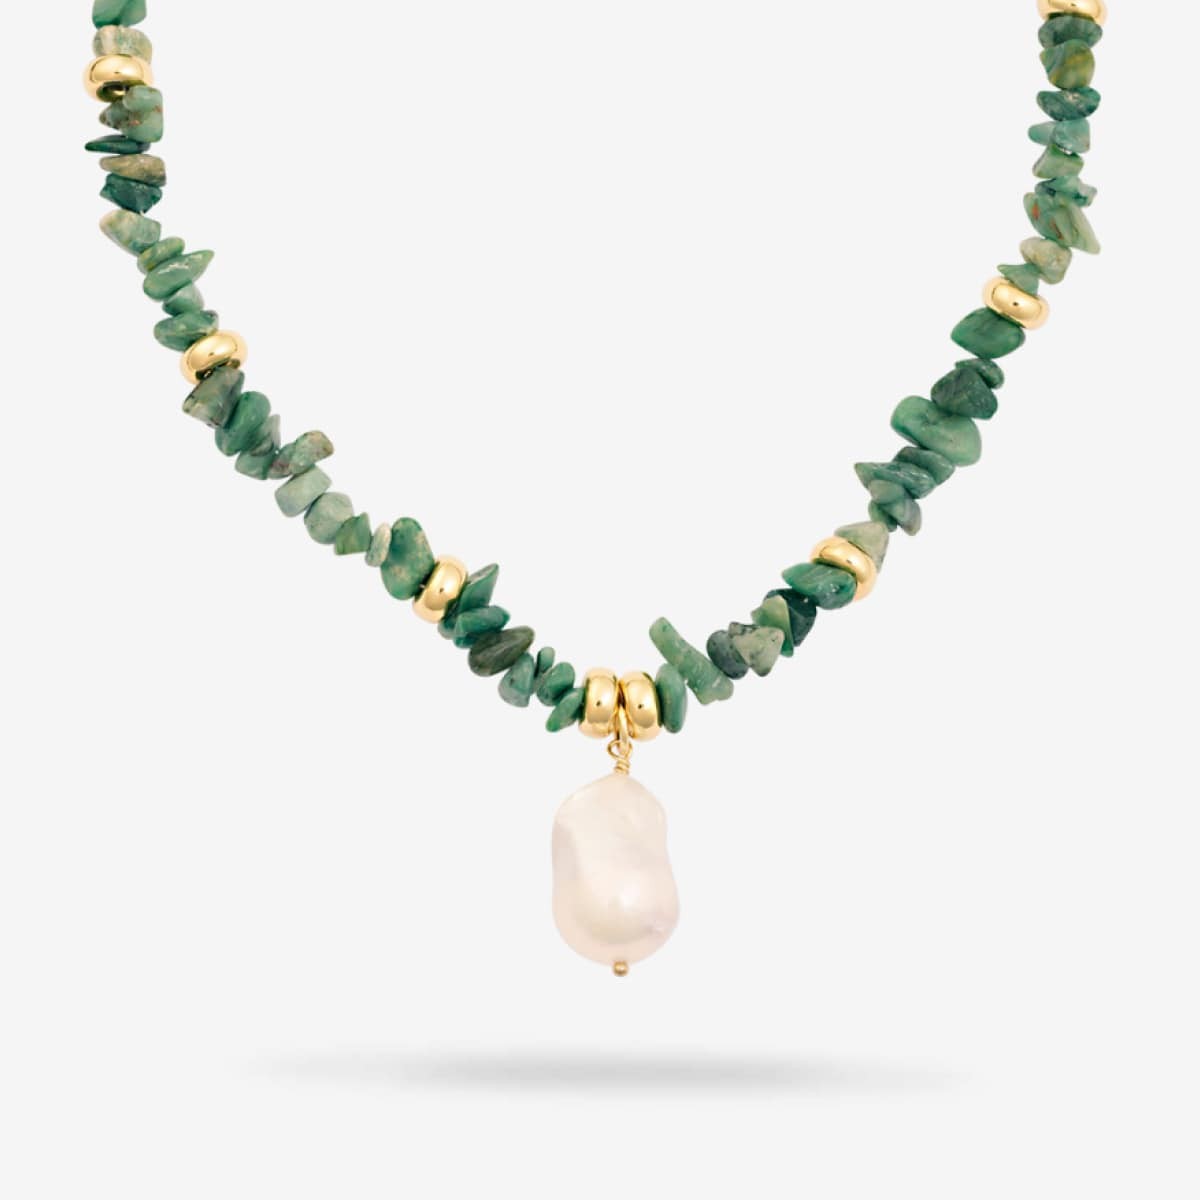 Prase Chain with Pearl - Halsketten - 18k vergoldet